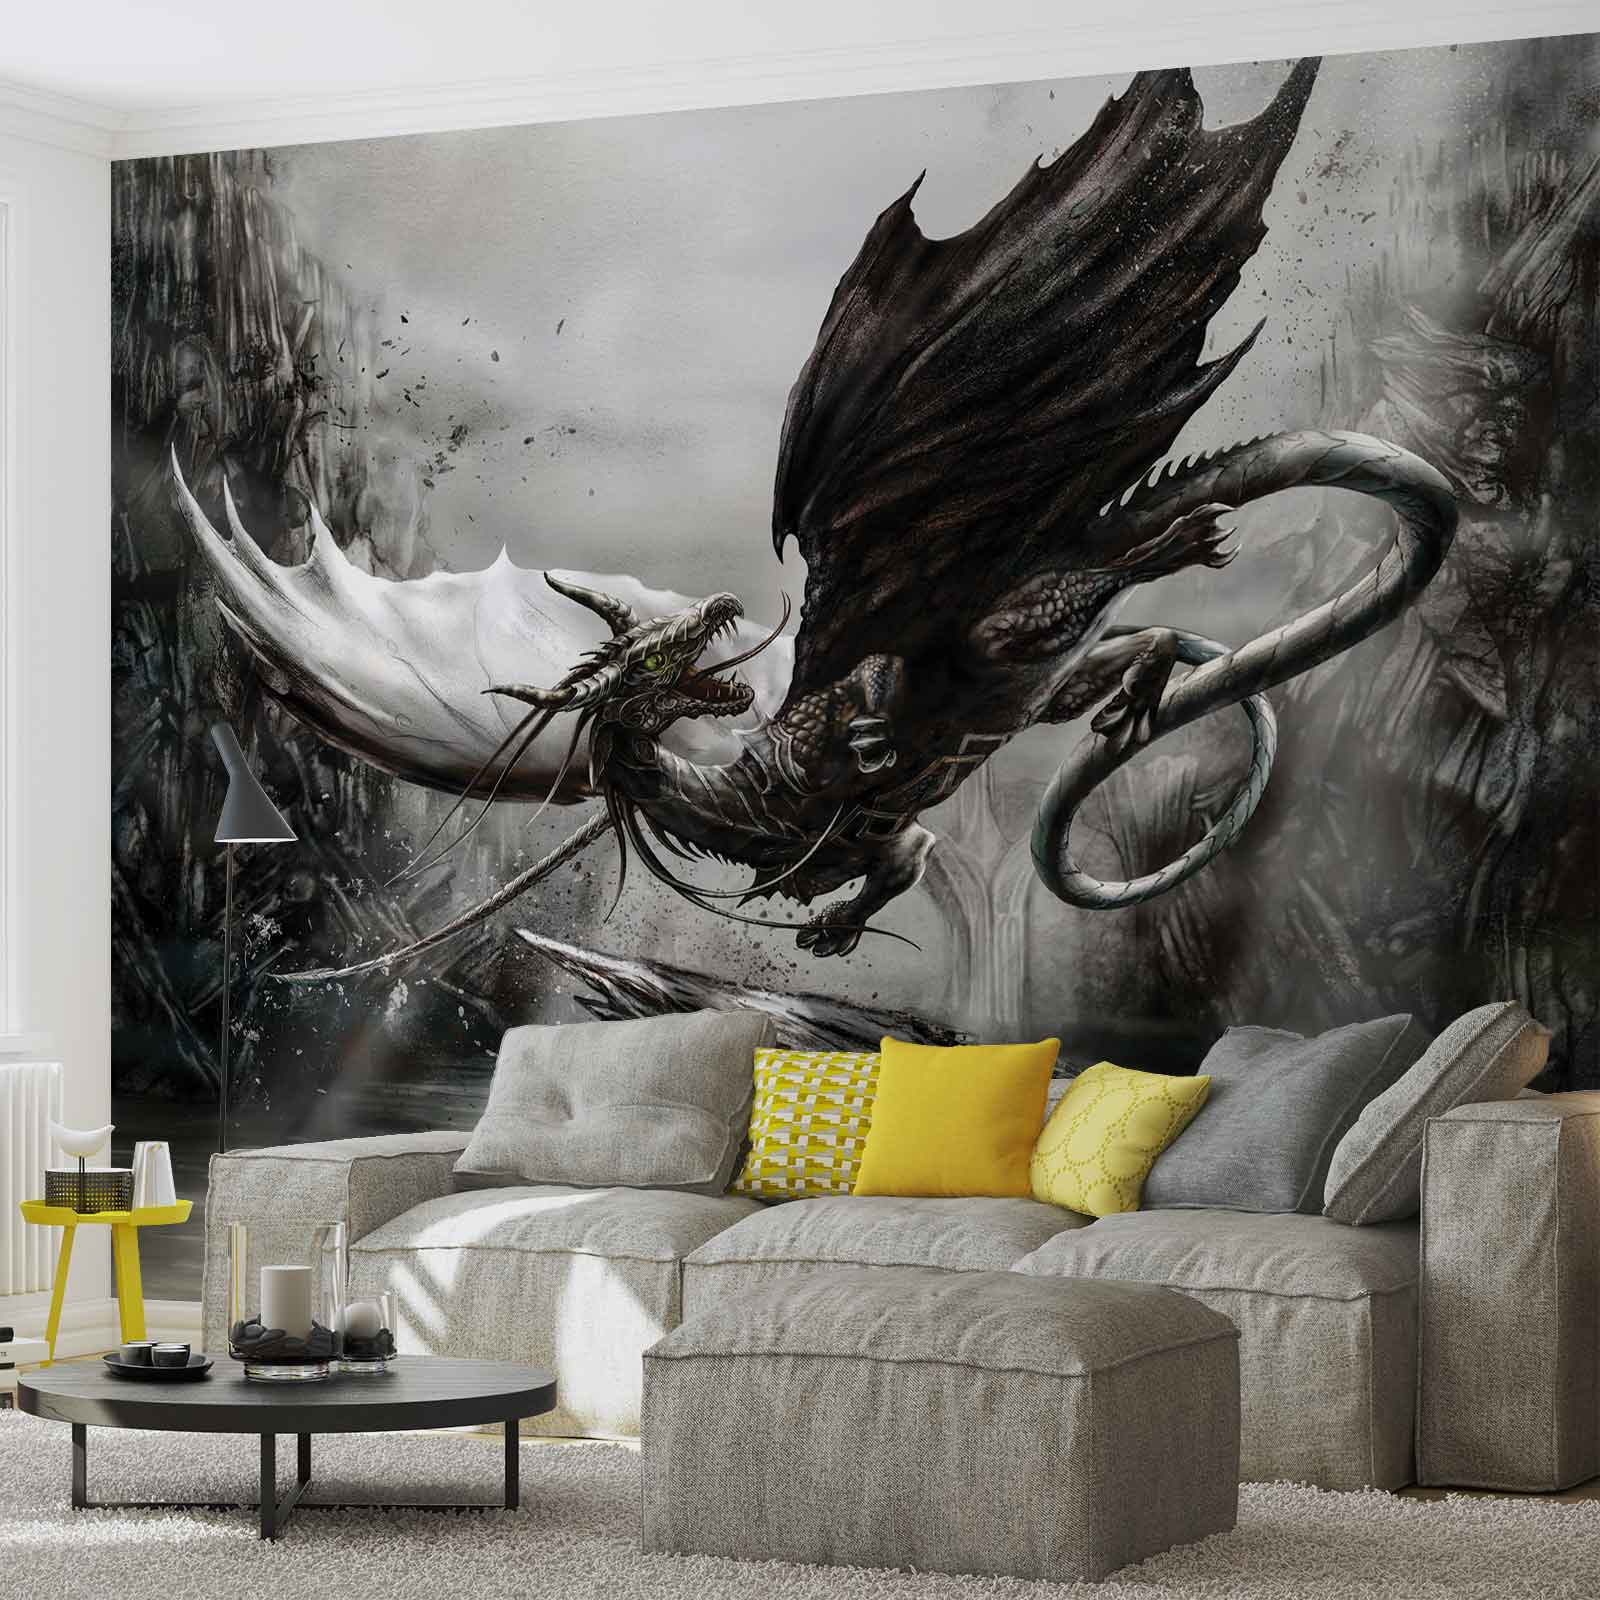 wallpaper xxl,feather,wall,modern art,wallpaper,room